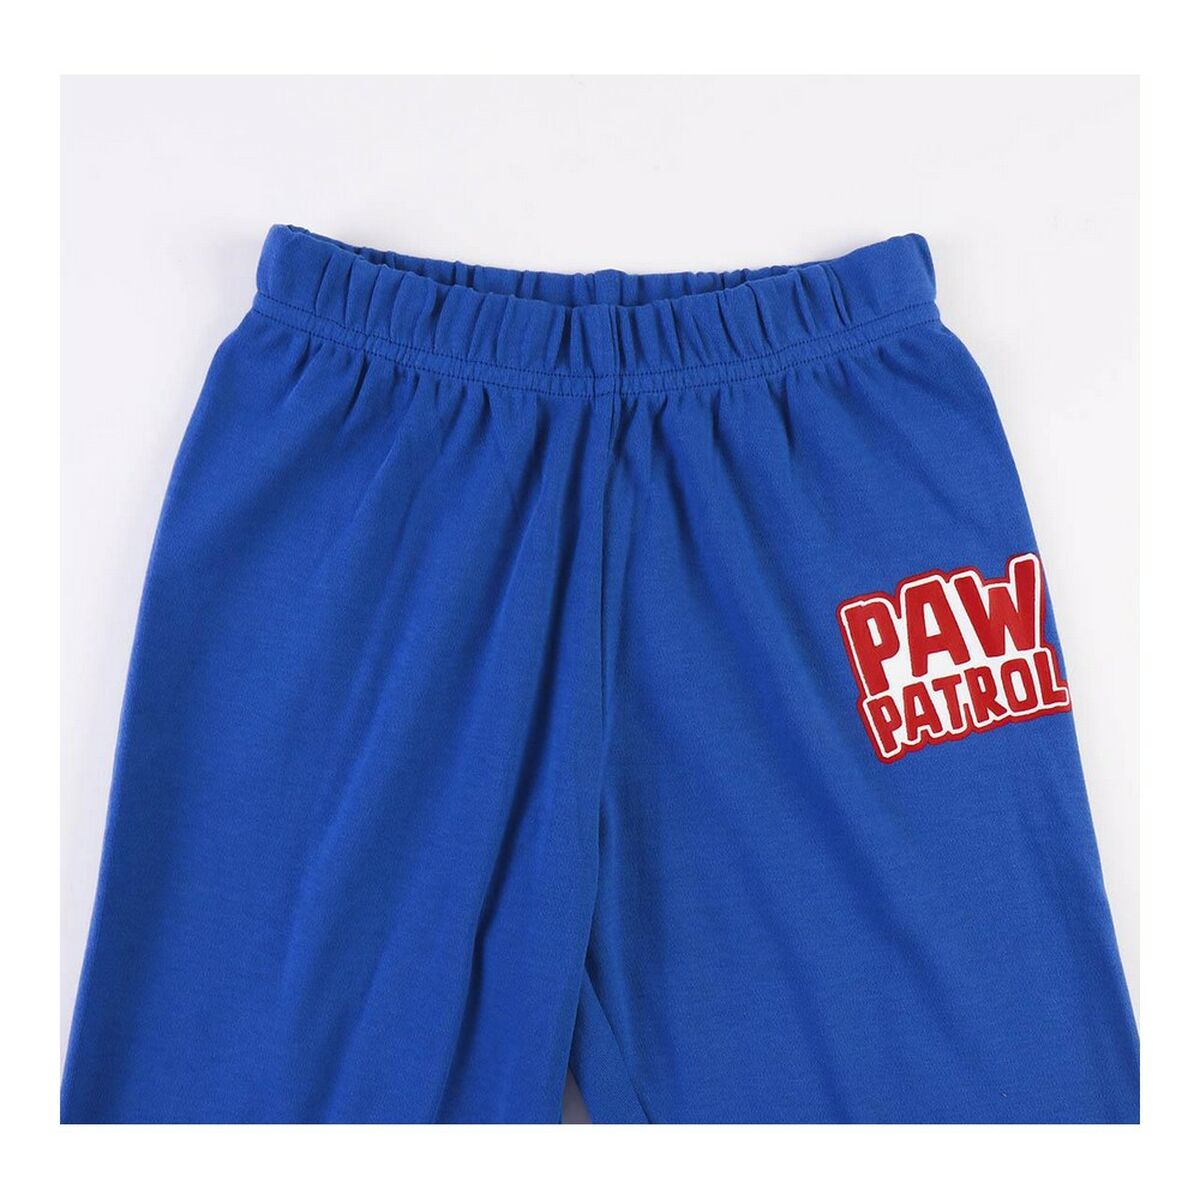 Pyjama Kinderen The Paw Patrol Blauw